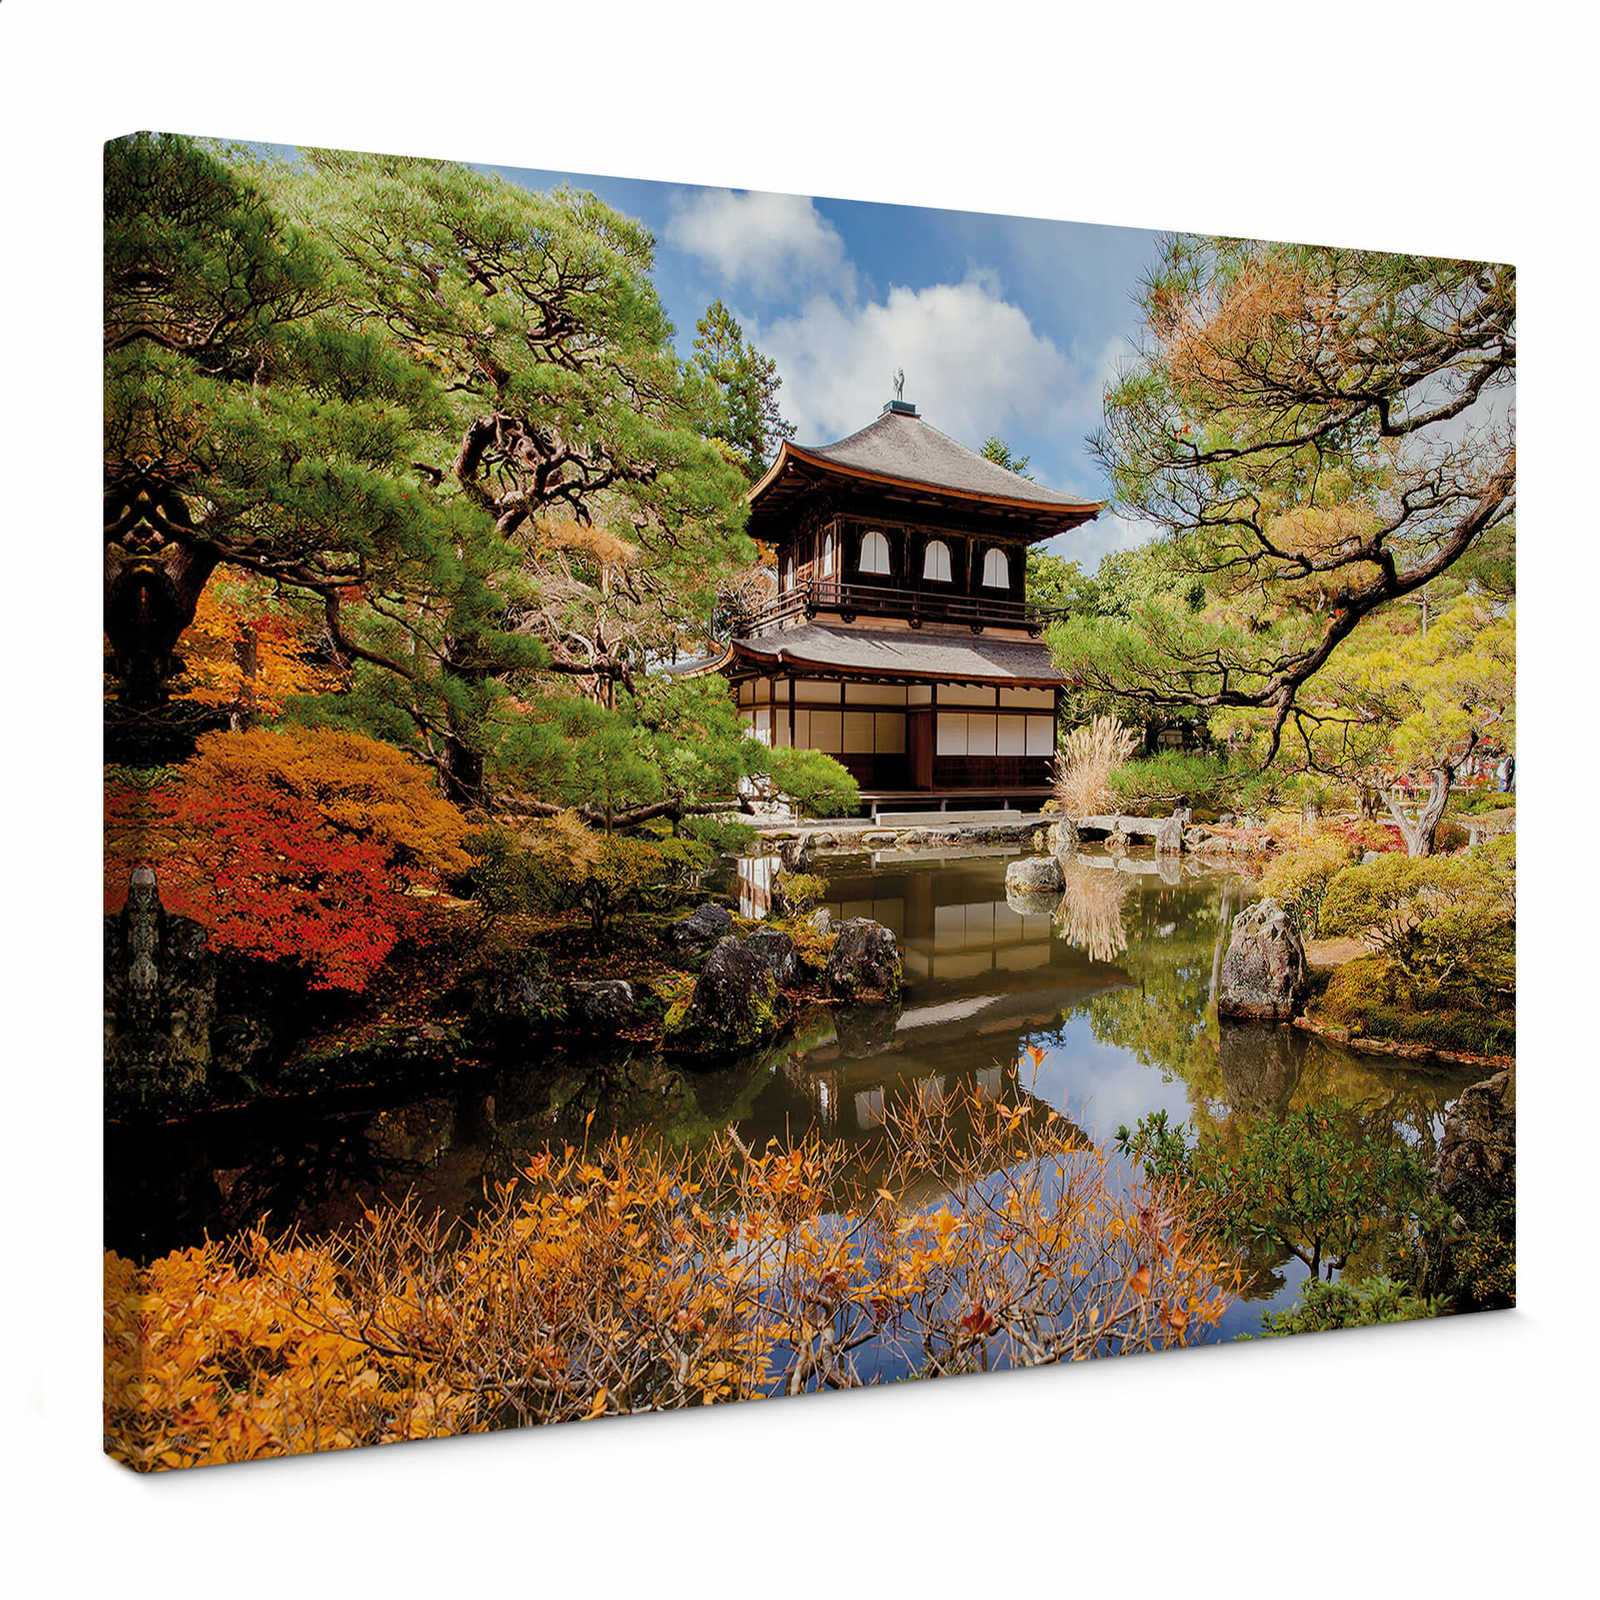         Leinwandbild Japanischer Garten mit Pagode – 0,70 m x 0,50 m
    